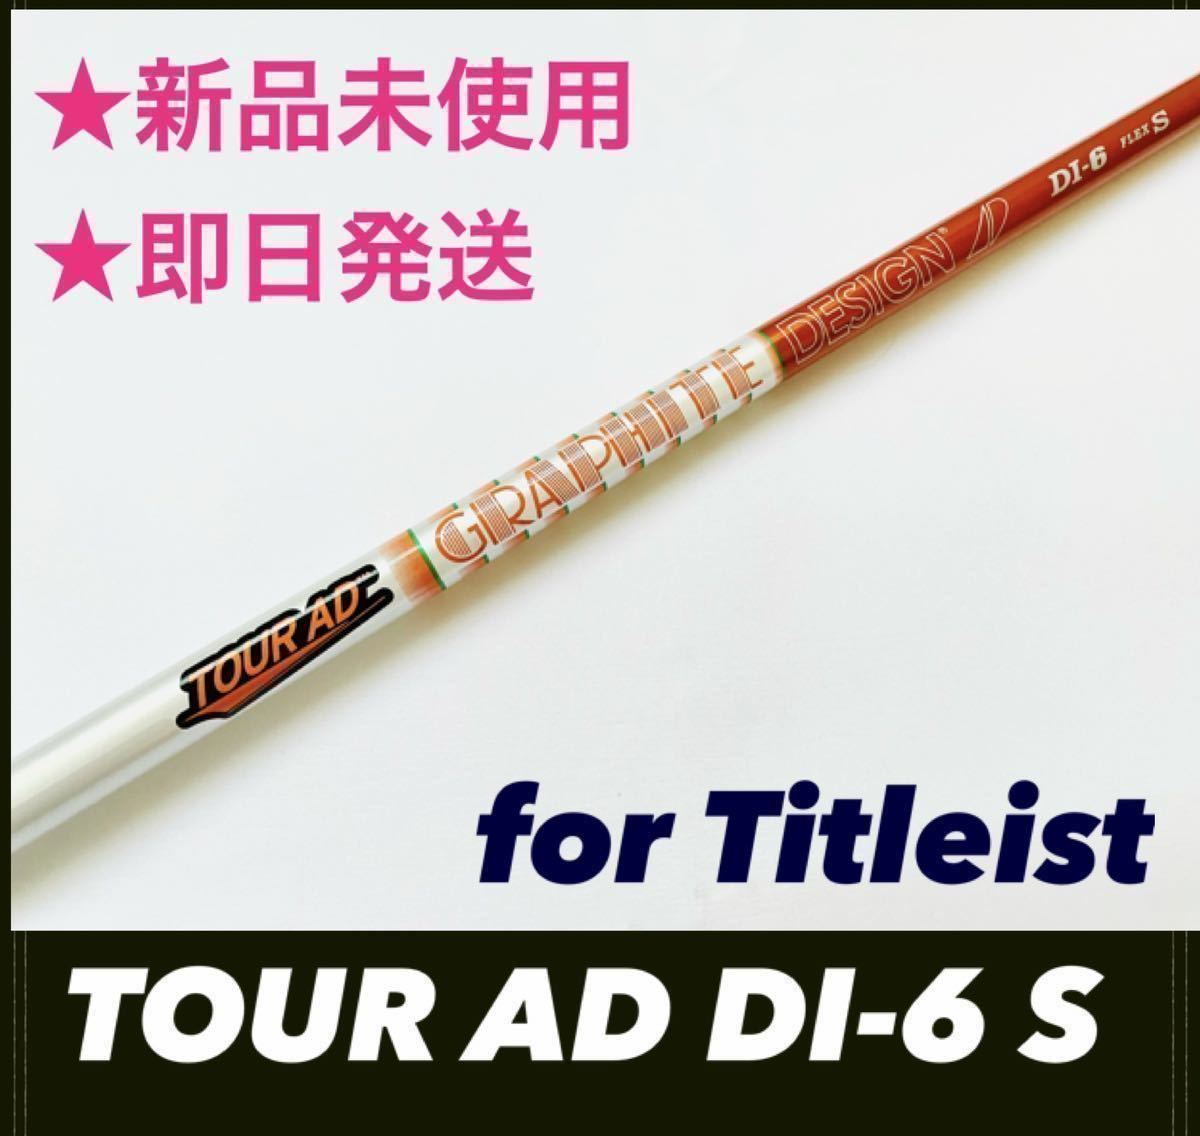 新品 TOUR AD DI-6 S ツアーAD タイトリスト シャフト シニア